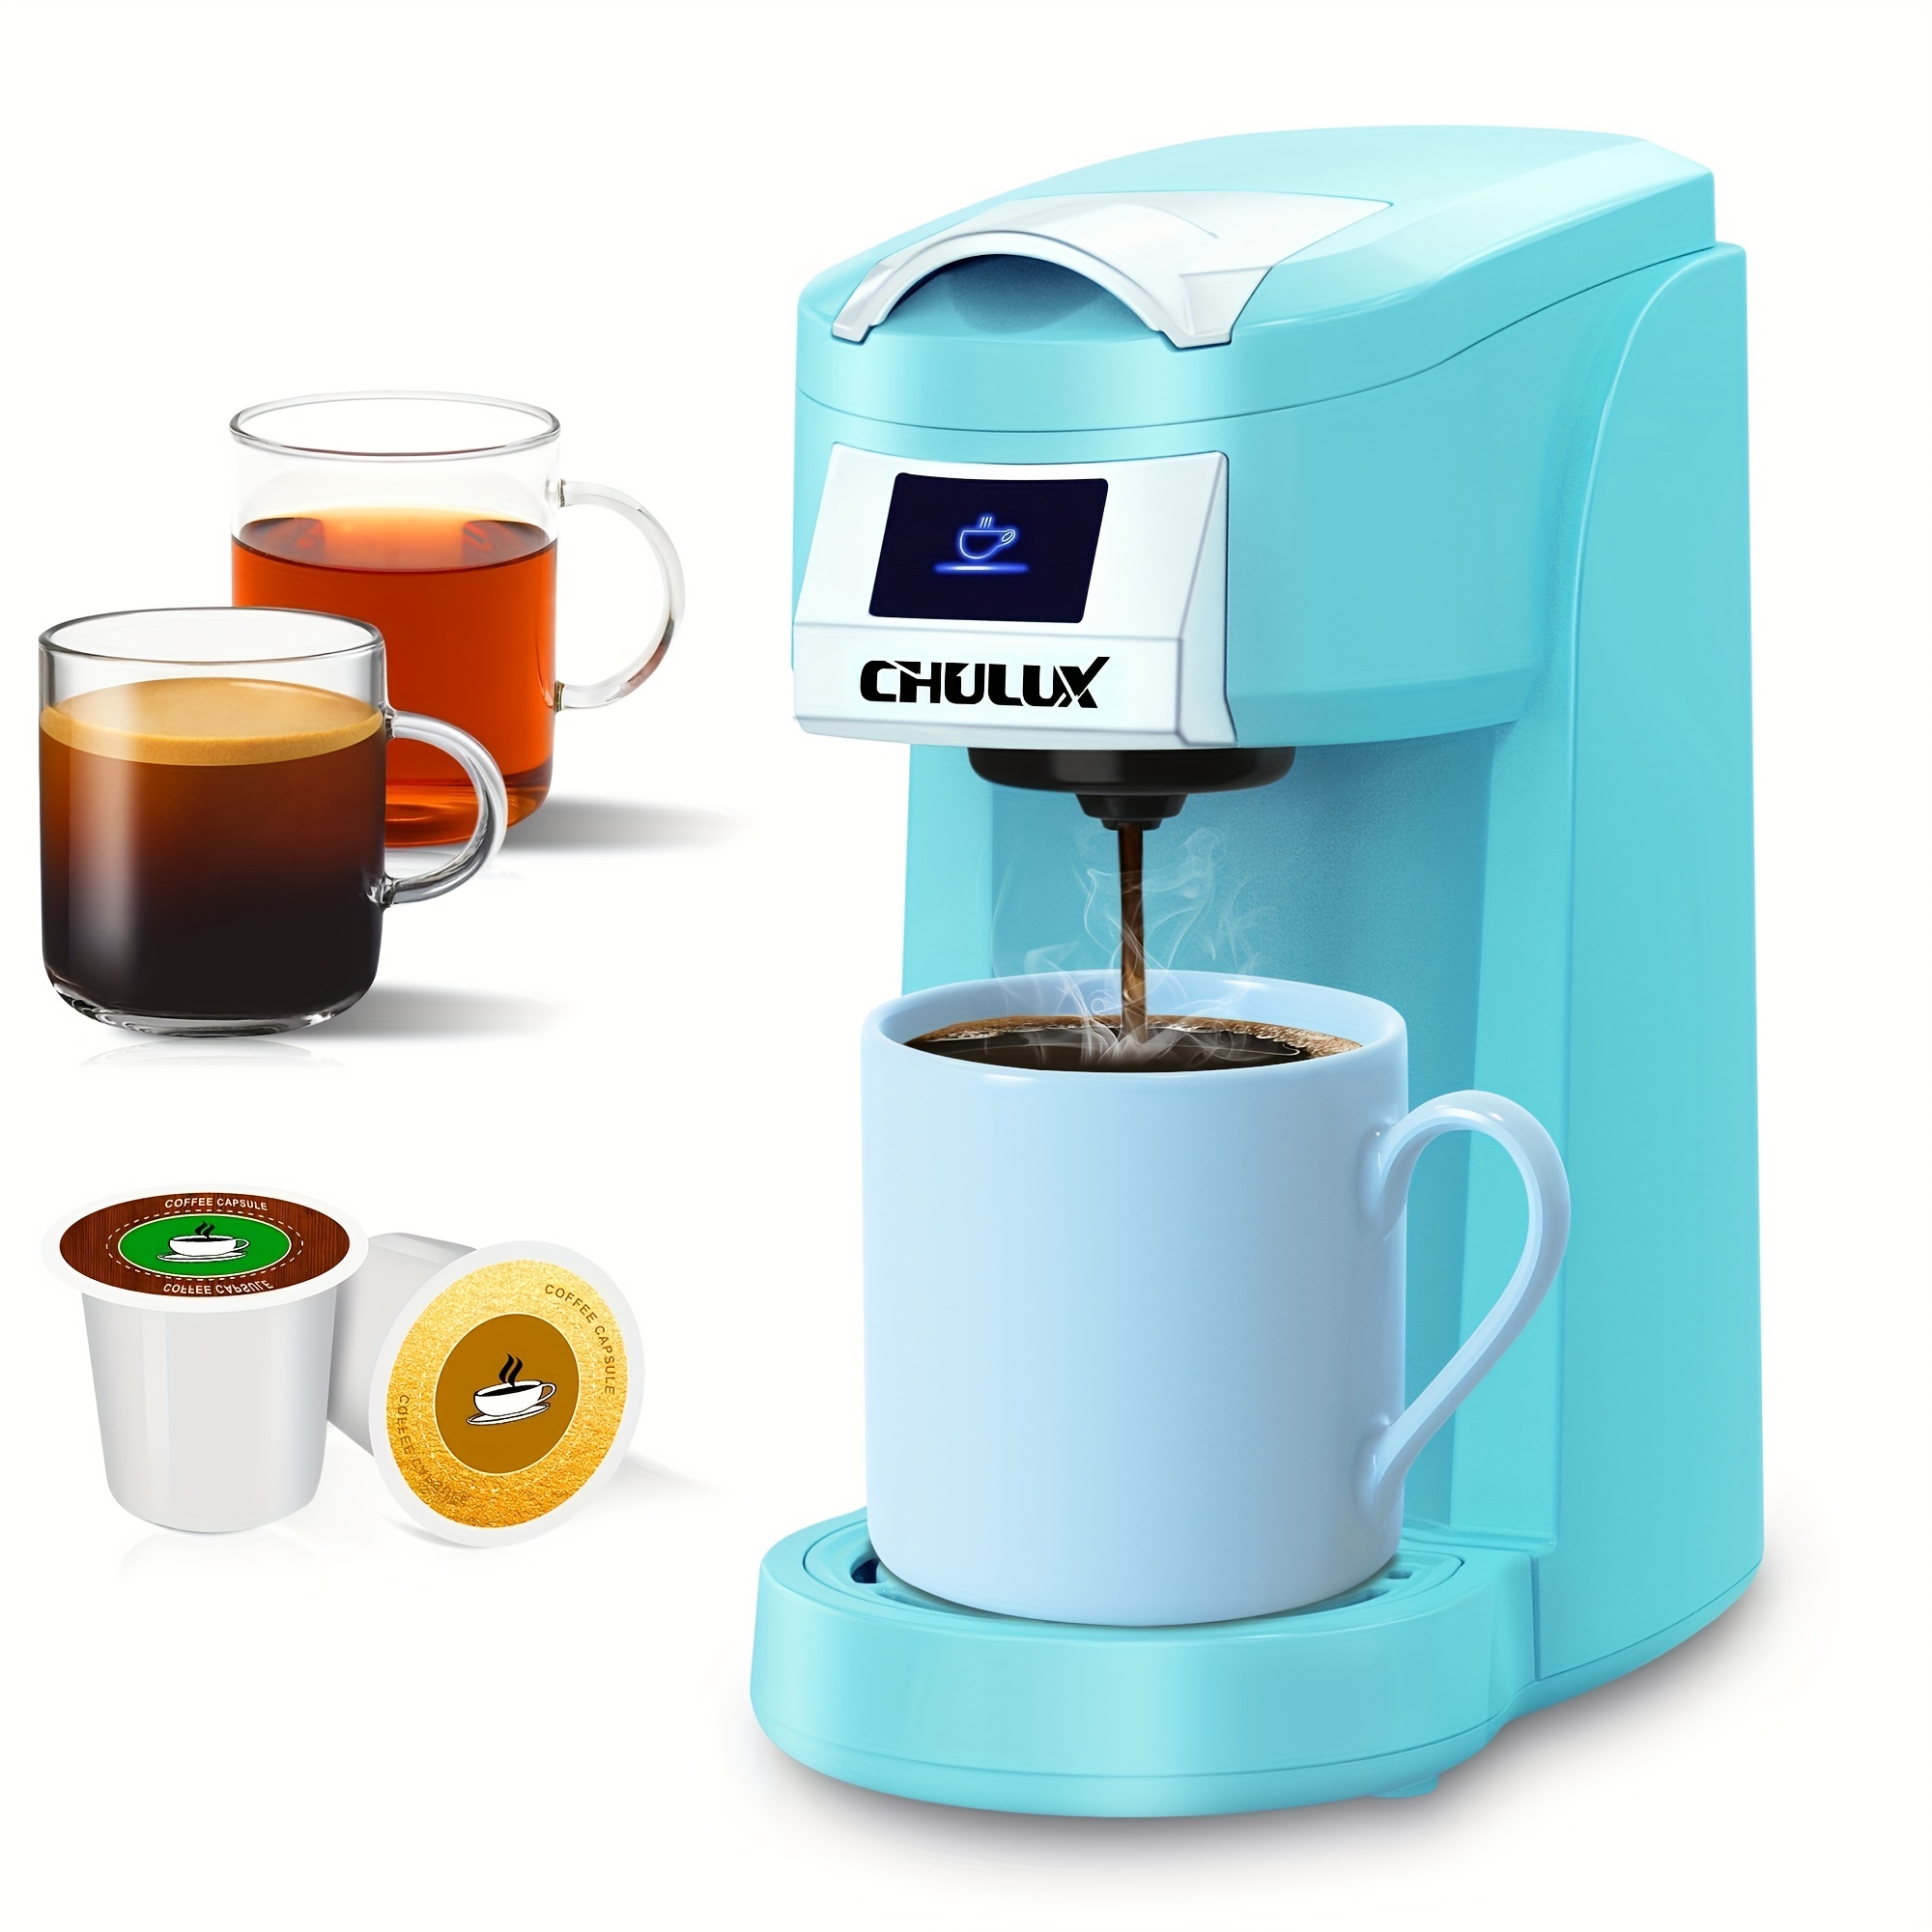 Cafetera Timco Multicapsula prepara tu cafe con Capsulas o cafe en pol –